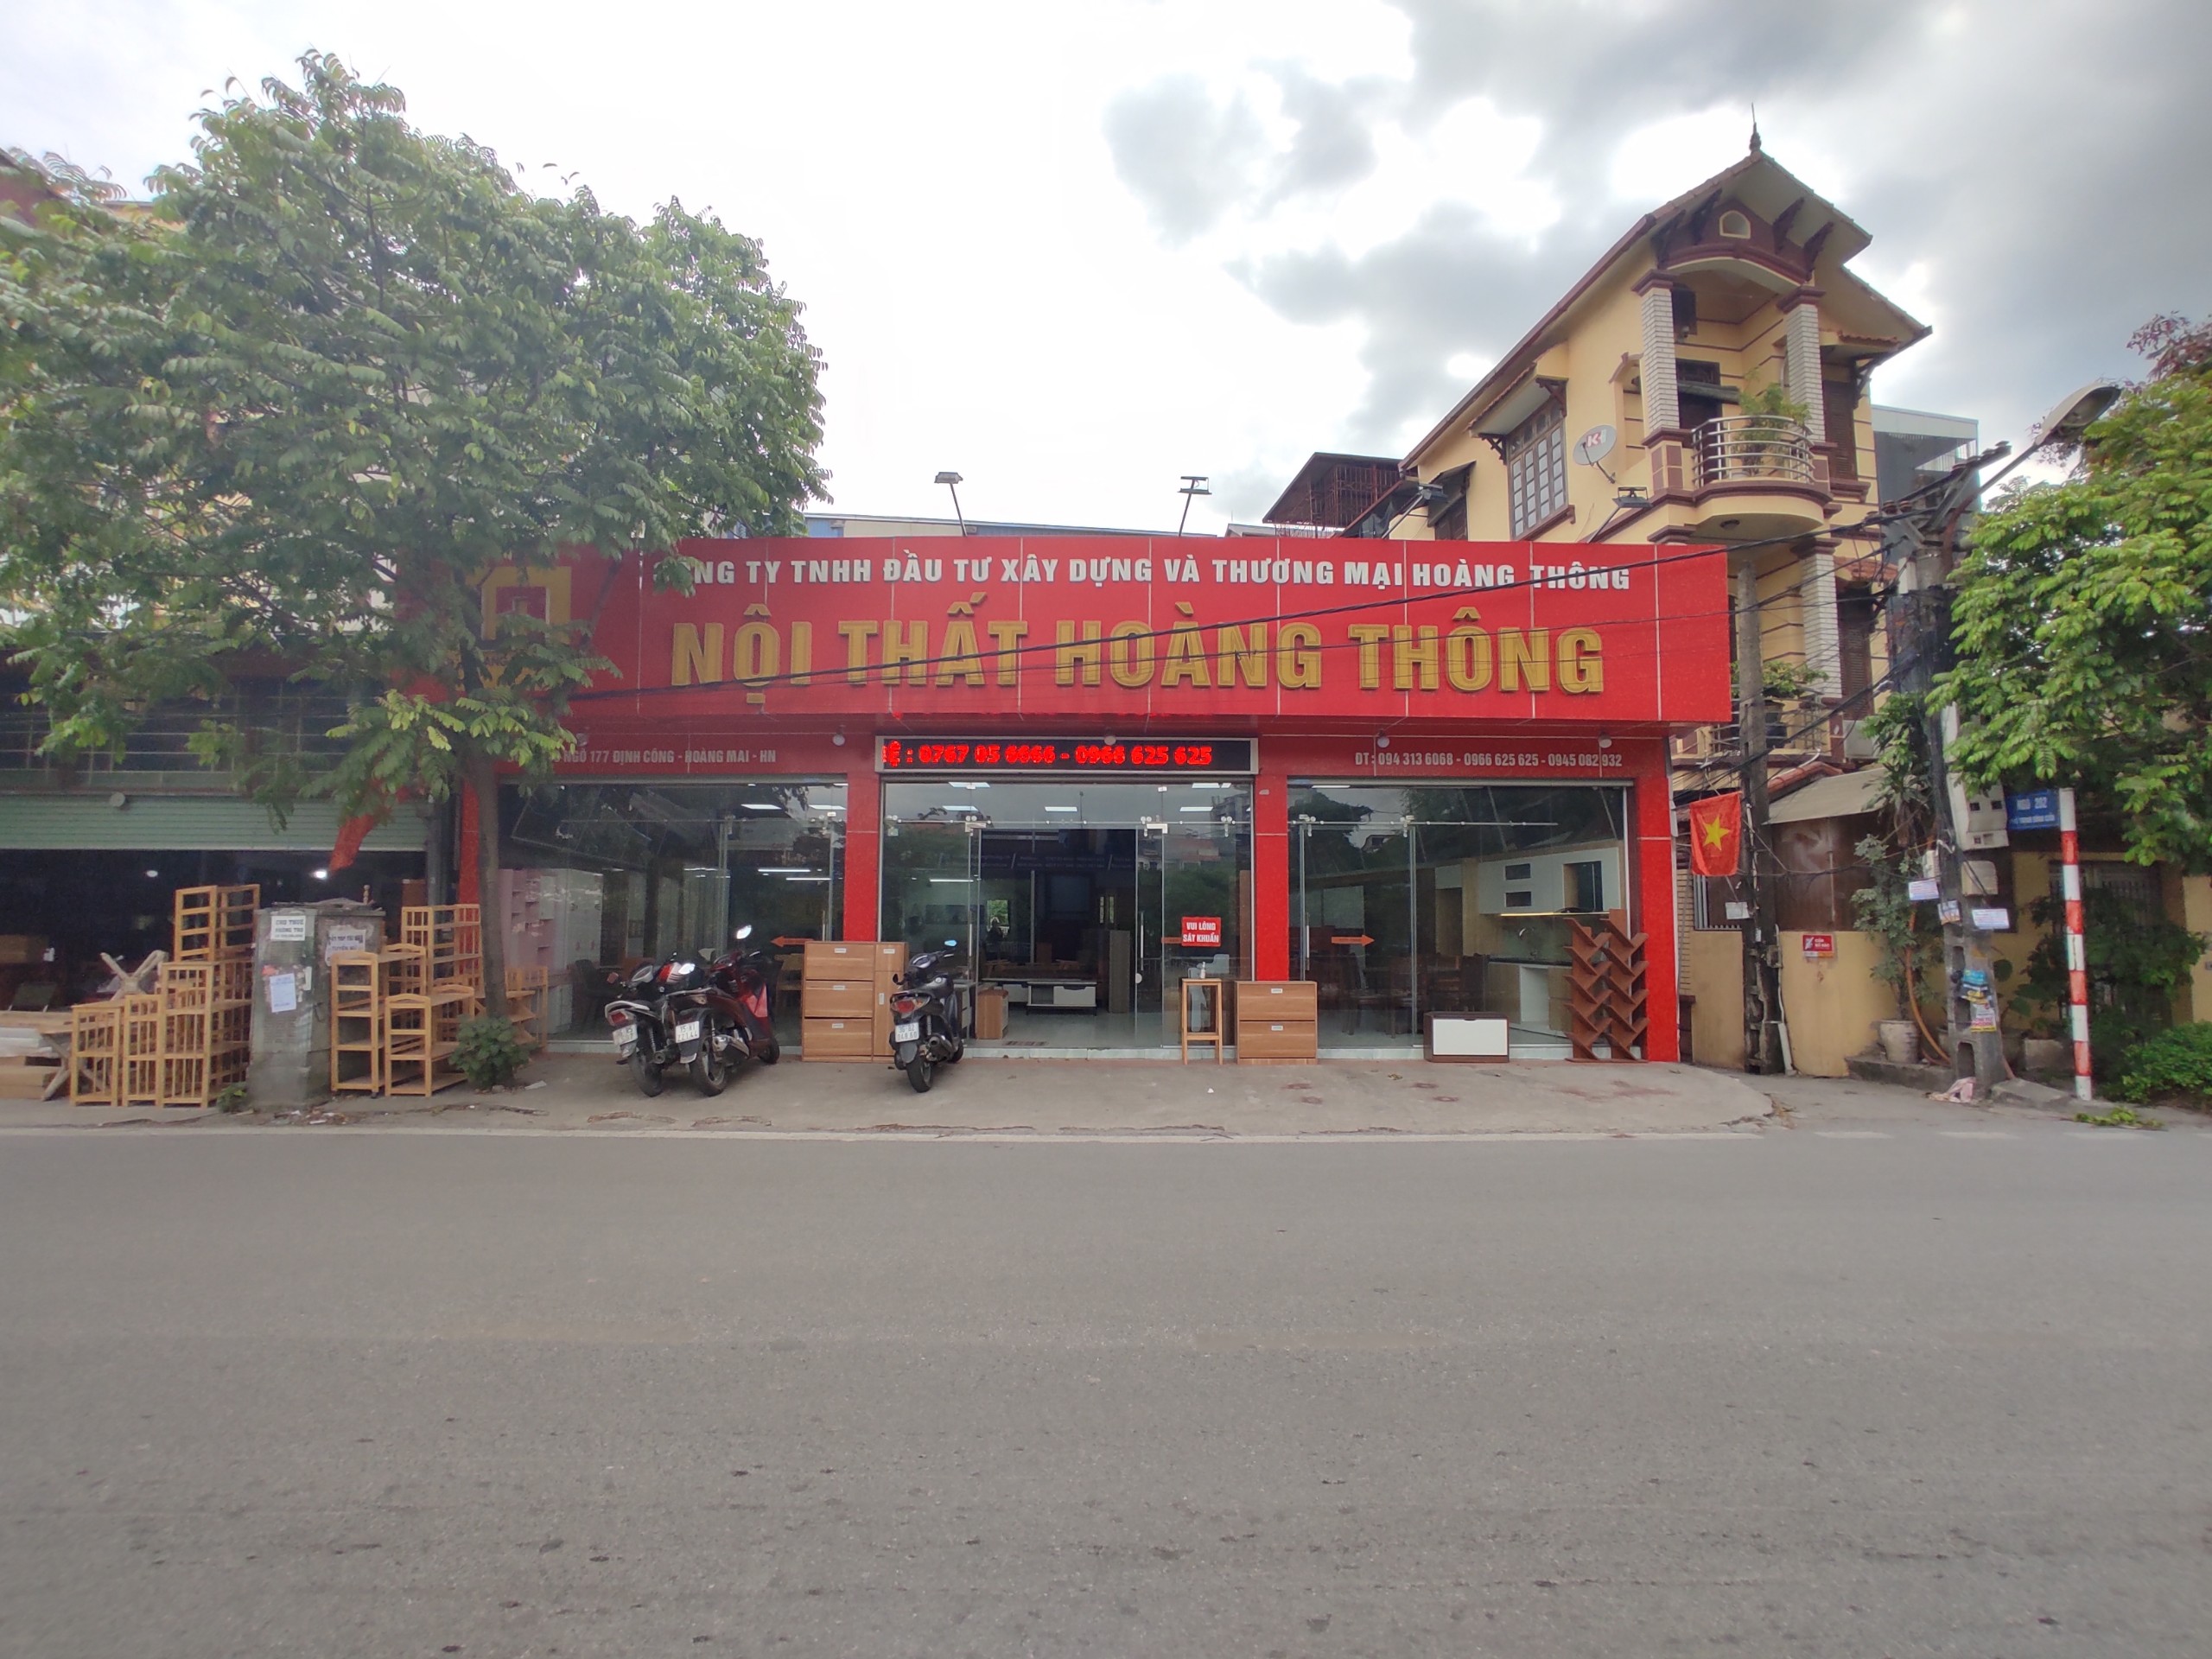 Hoàng Thông - đơn vị thiết kế nội thất giá rẻ tại Hà Nội